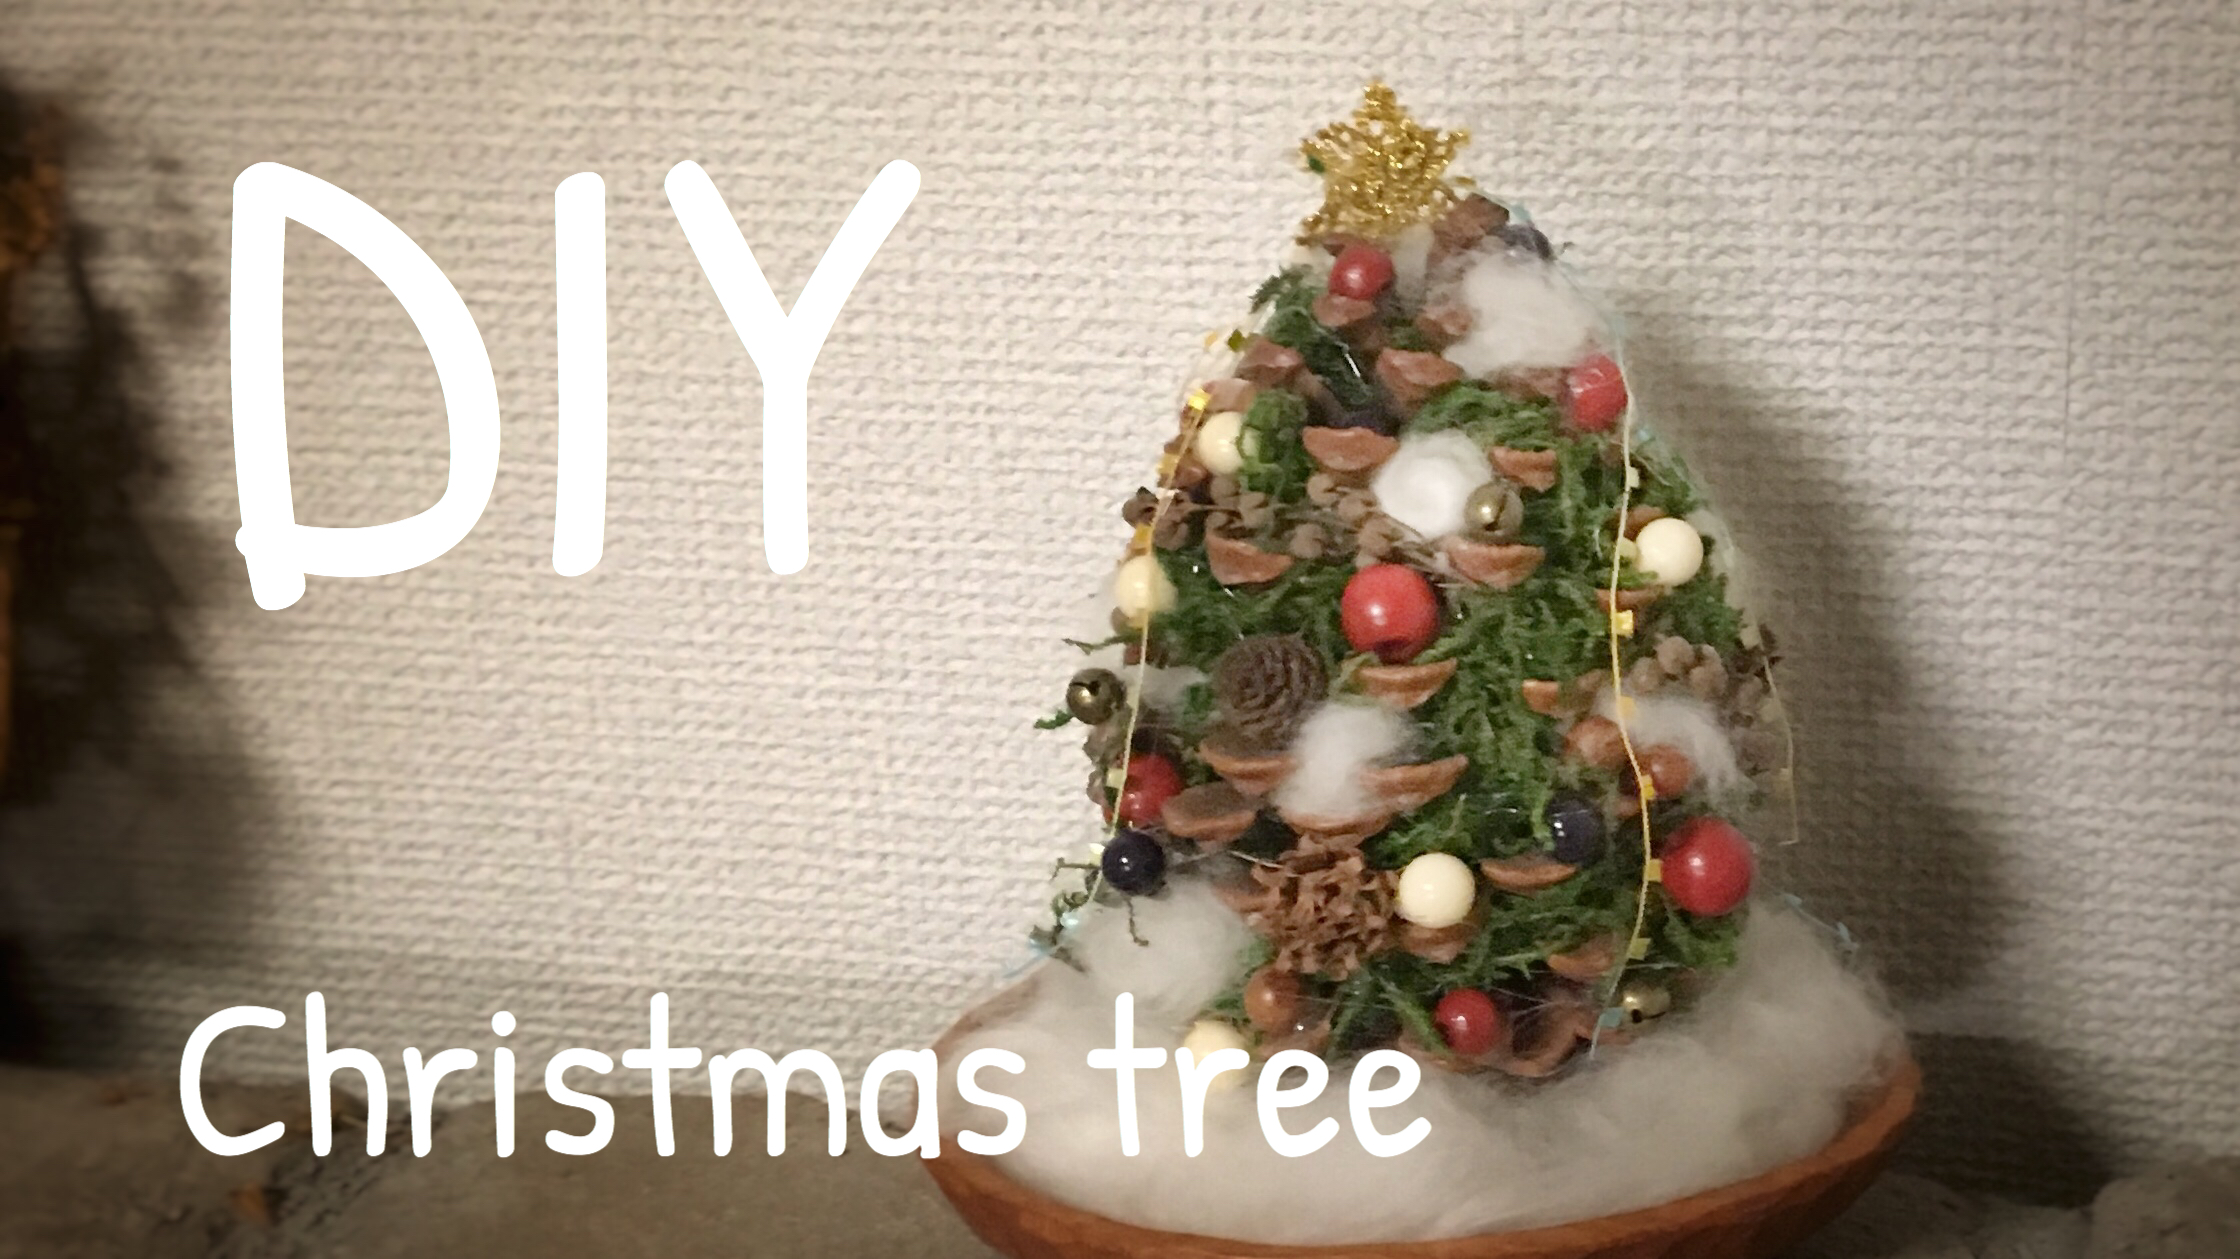 松ぼっくりでクリスマスツリーを手作り 100均グッズで楽しむクリスマス工作 つれづれリメイク日和